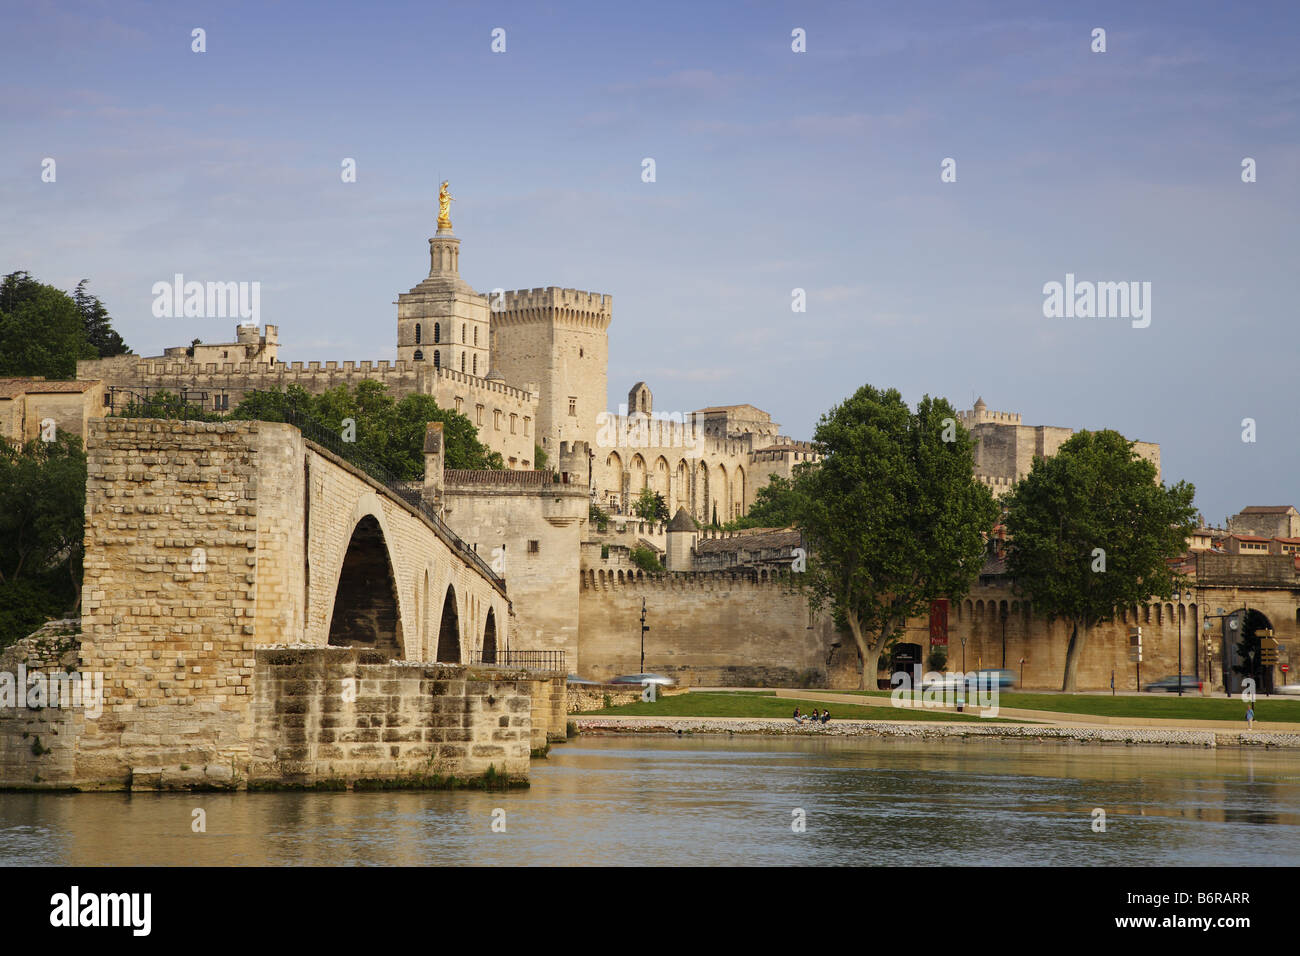 Le Pont d'Avignon et le Palais des Papes, Avignon, France Banque D'Images